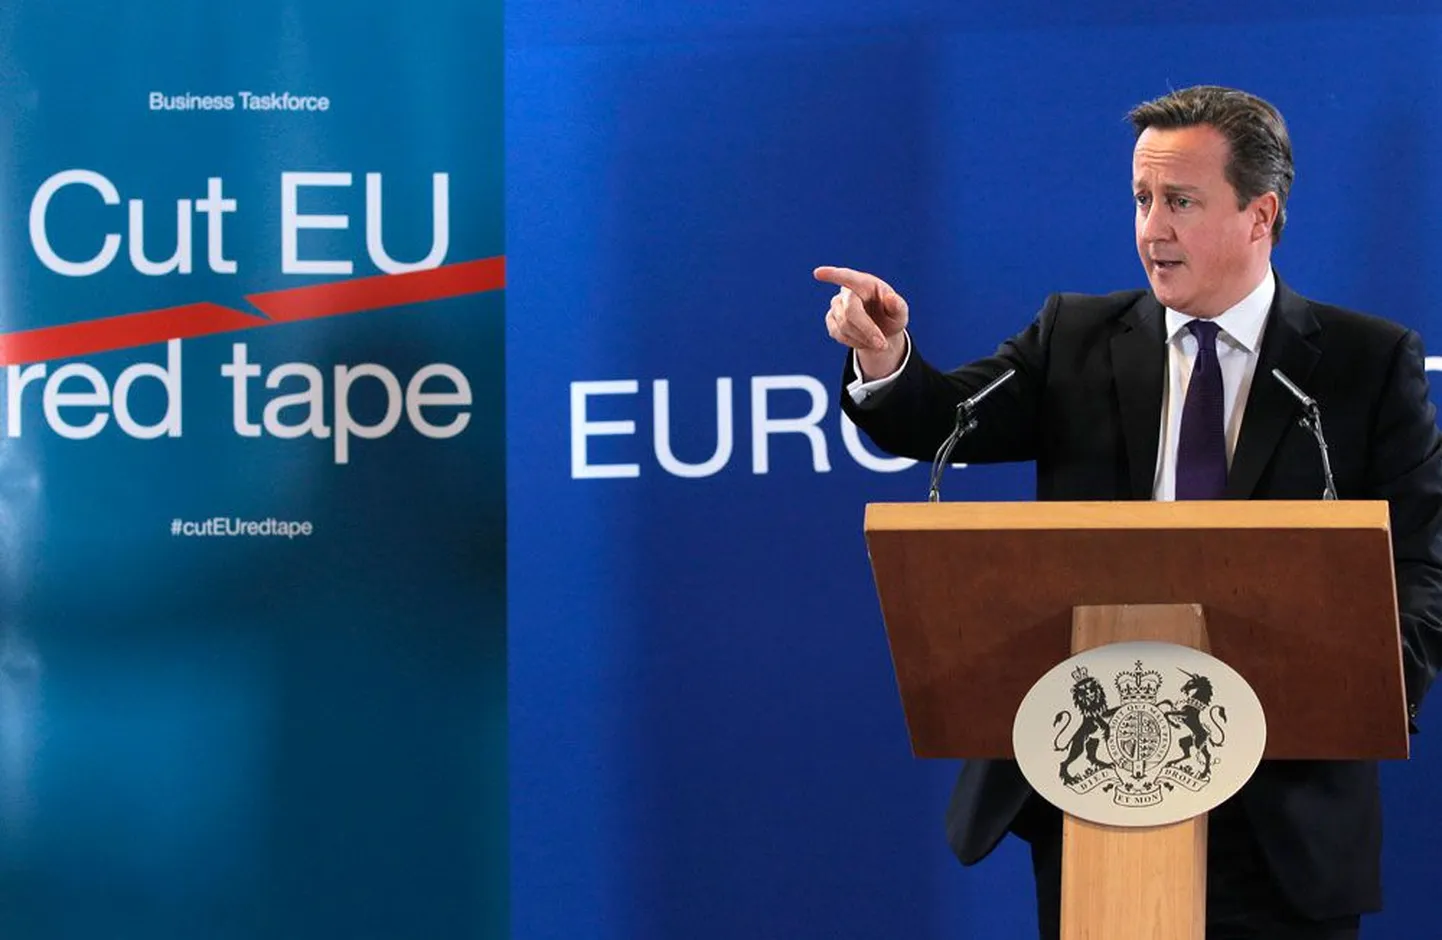 Suurbritannia peaministri David Cameroni esitatud meetmete pakett peaks eemal hoidma Rumeenia ja Bulgaaria sisserändajaid, kellel alates uuest aastast on õigus vabalt Euroopa Liidus tööd otsida.